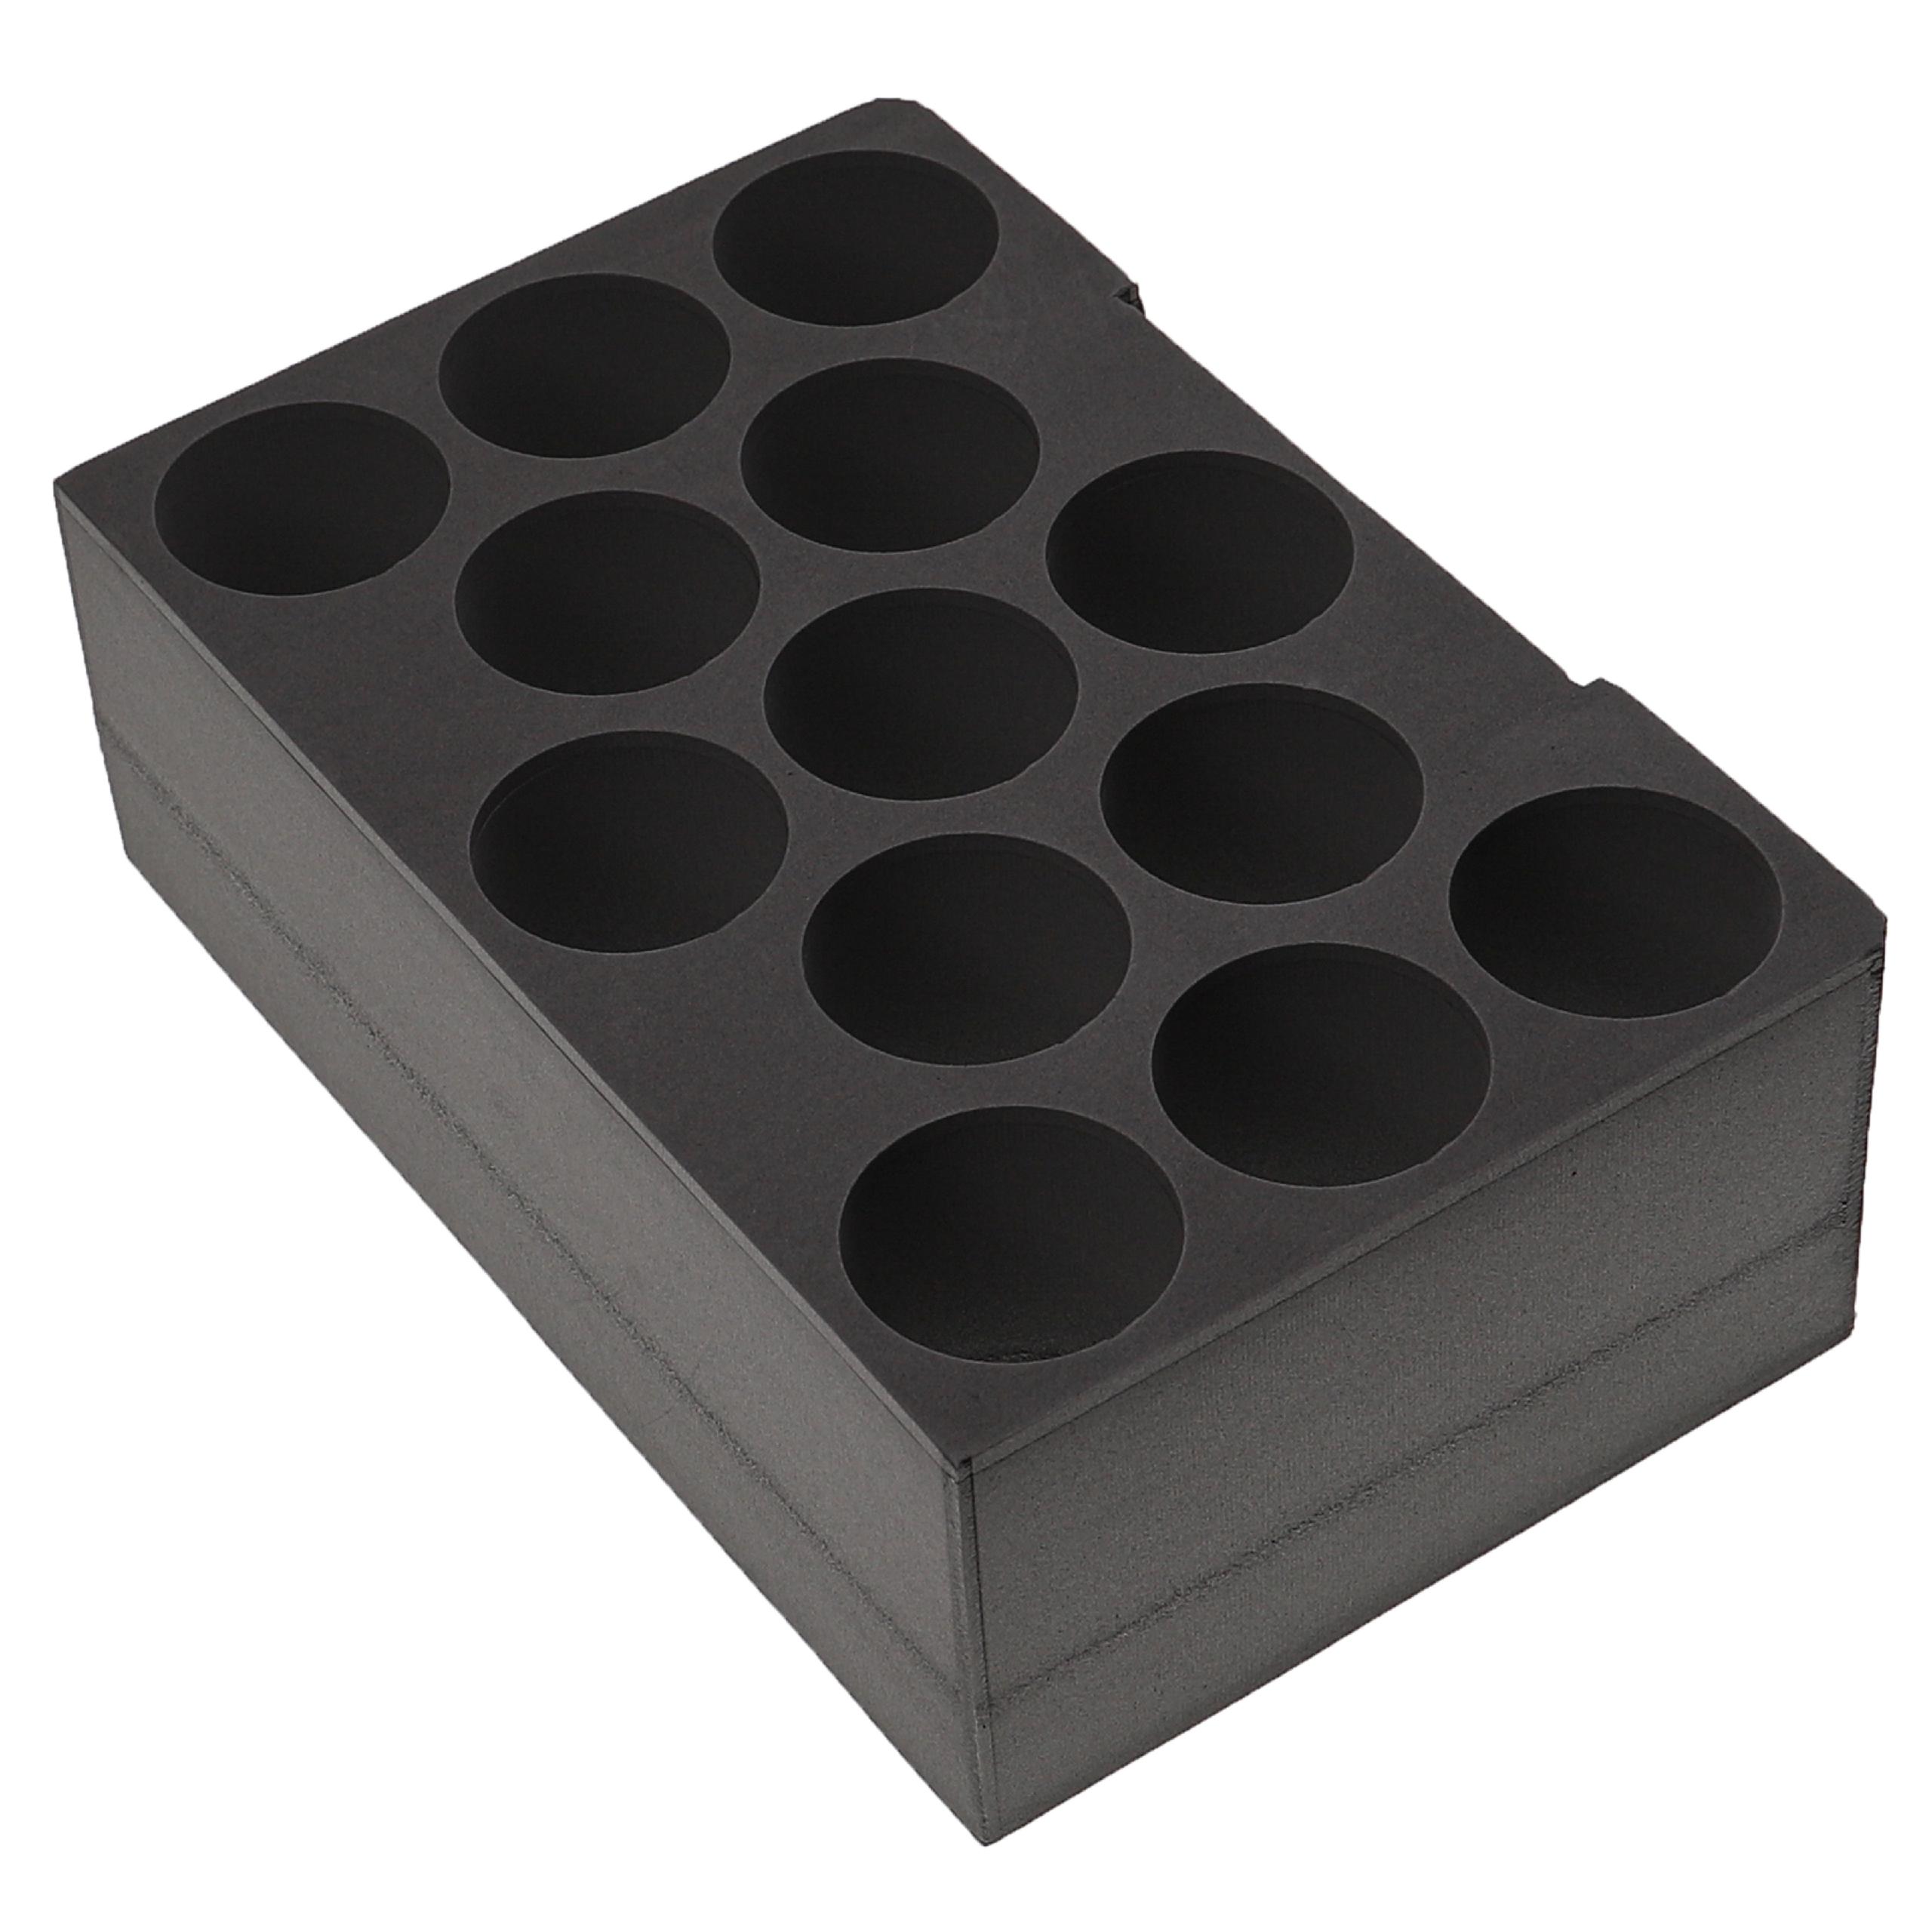 Inserto para 13 cartuchos de espuma compatible con cajas de herramientas Bosch Sortimo - Inserto para cartucho